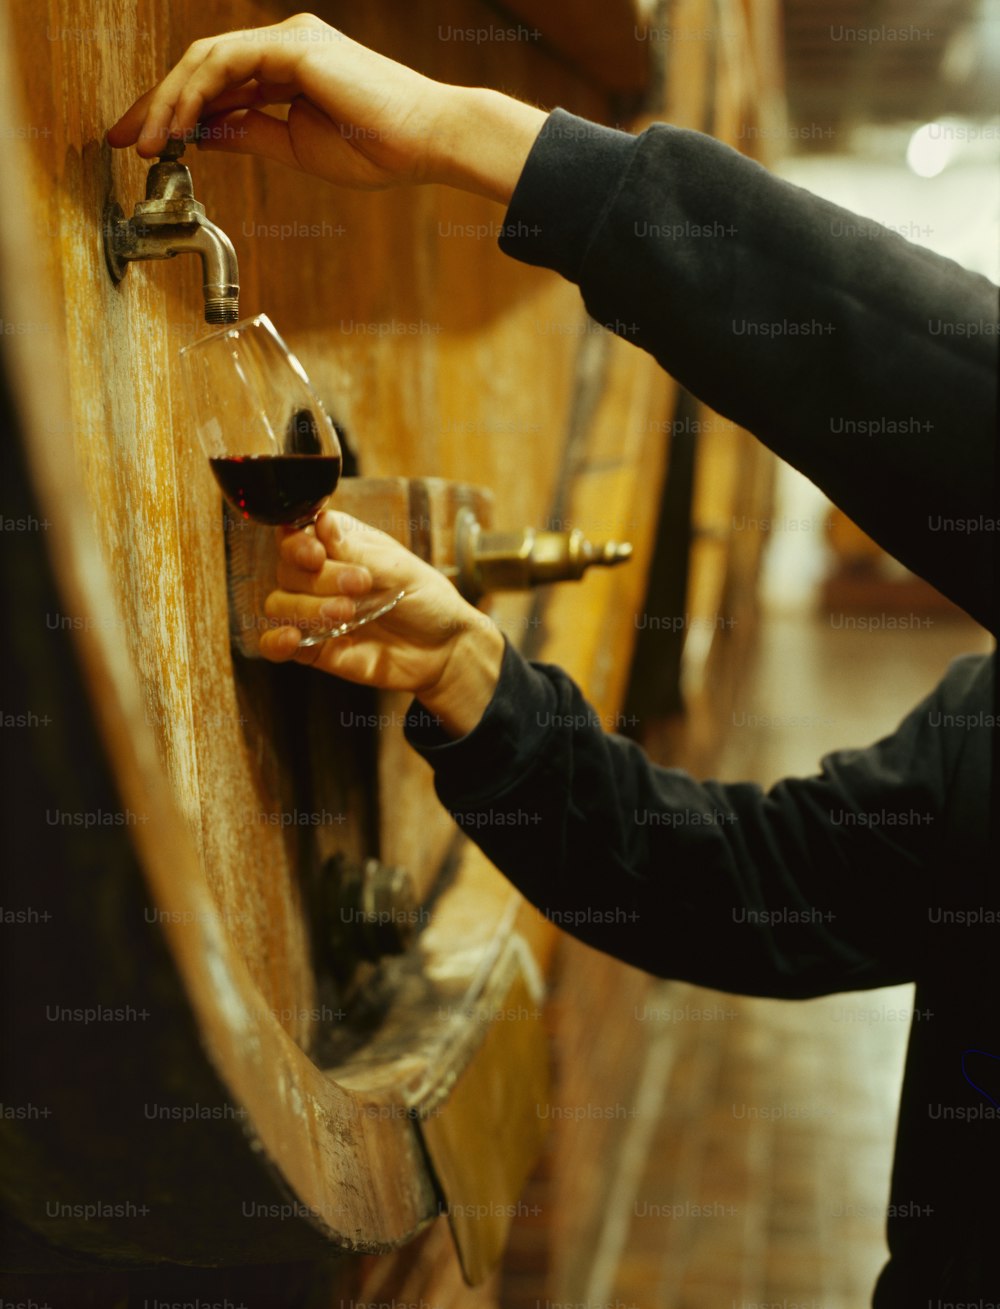 eine Person, die ein Glas Wein vor einem Holzfass hält